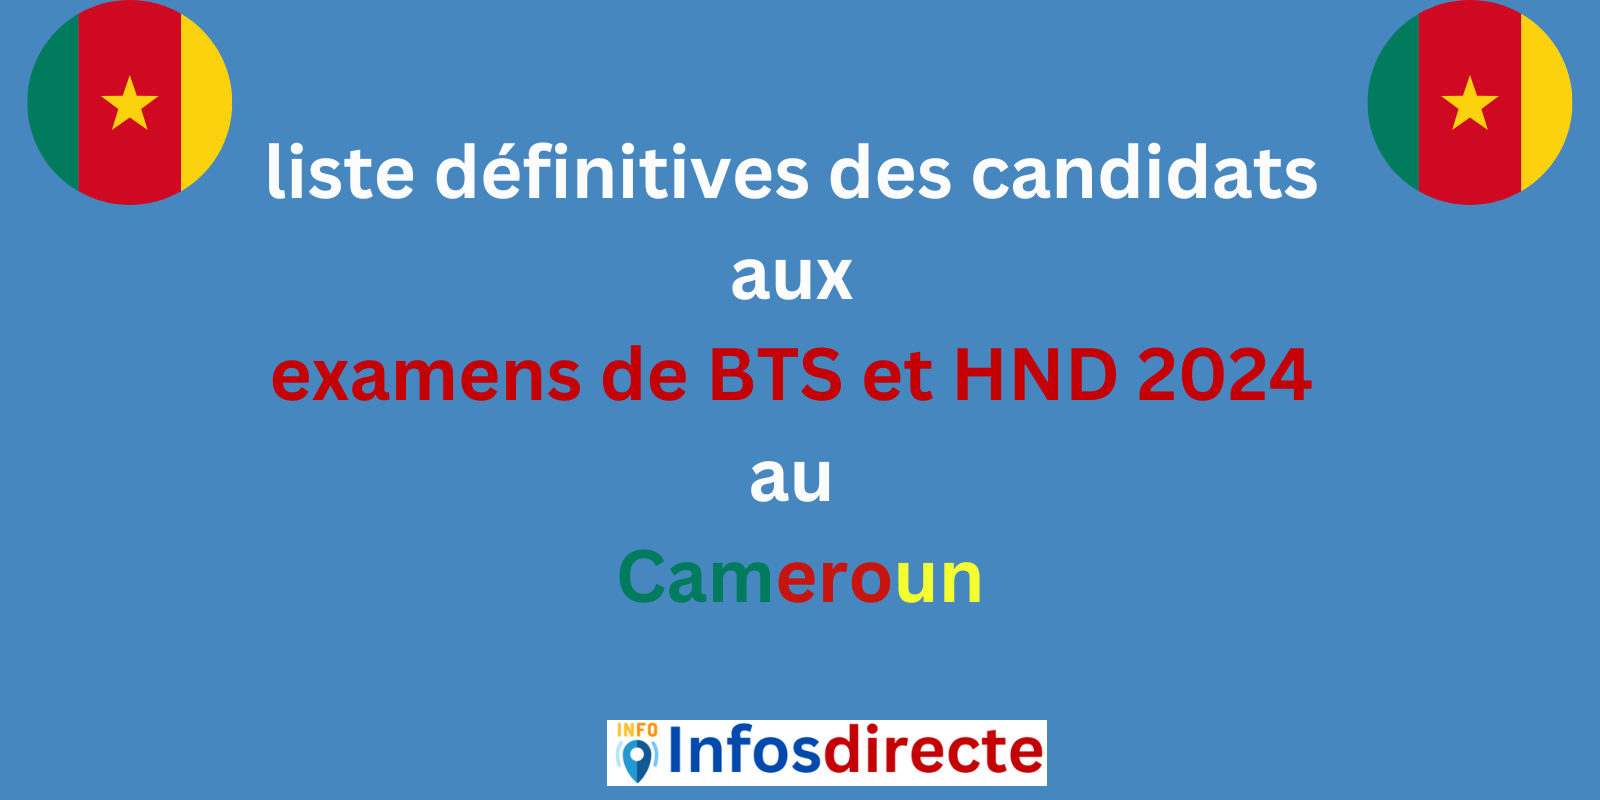 Communiqué rélatif à la liste définitives des candidats aux examens de BTS et HND 2024 au Cameroun